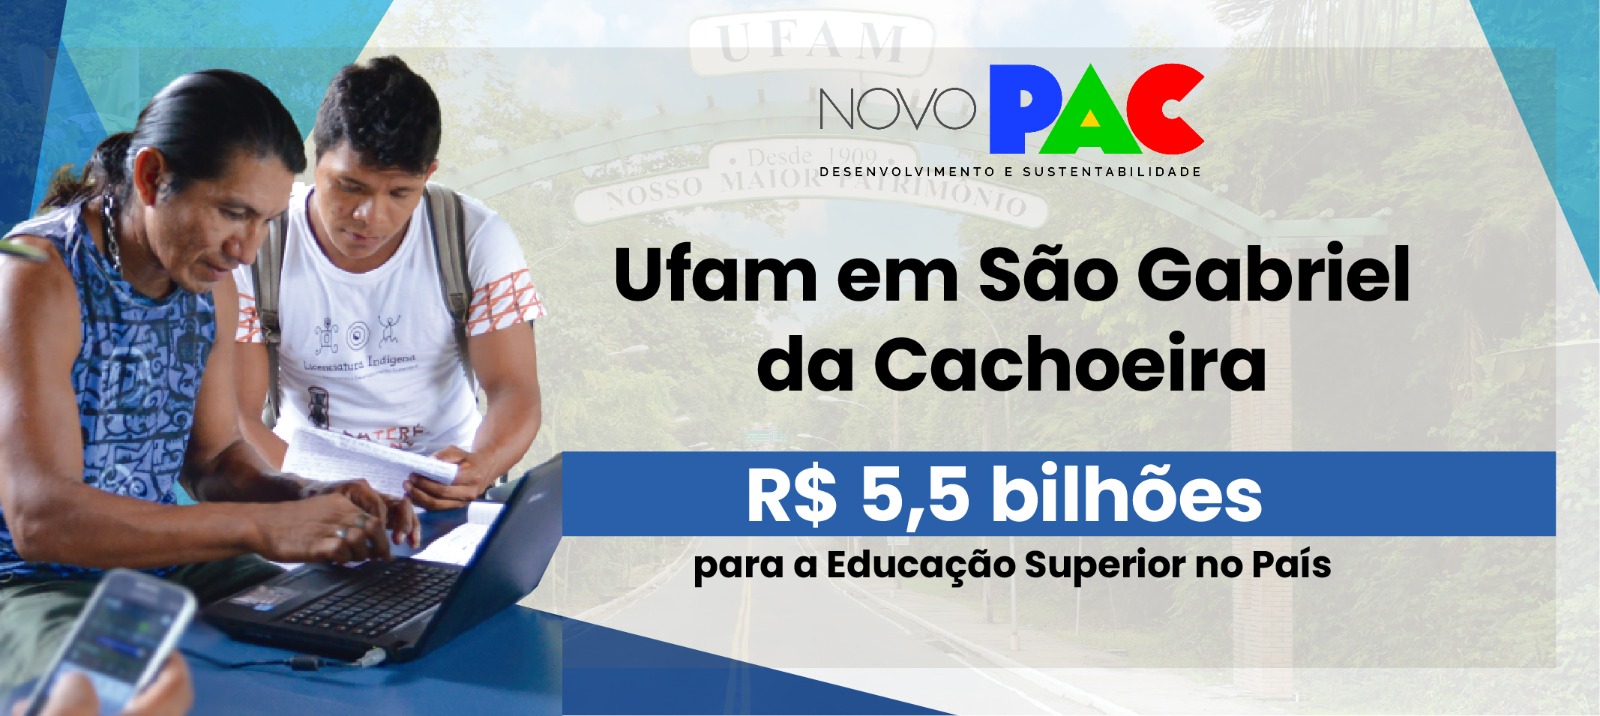 'São Gabriel da Cachoeira, cidade mais indígena do País, será novo campus da Ufam', anuncia governo federal 